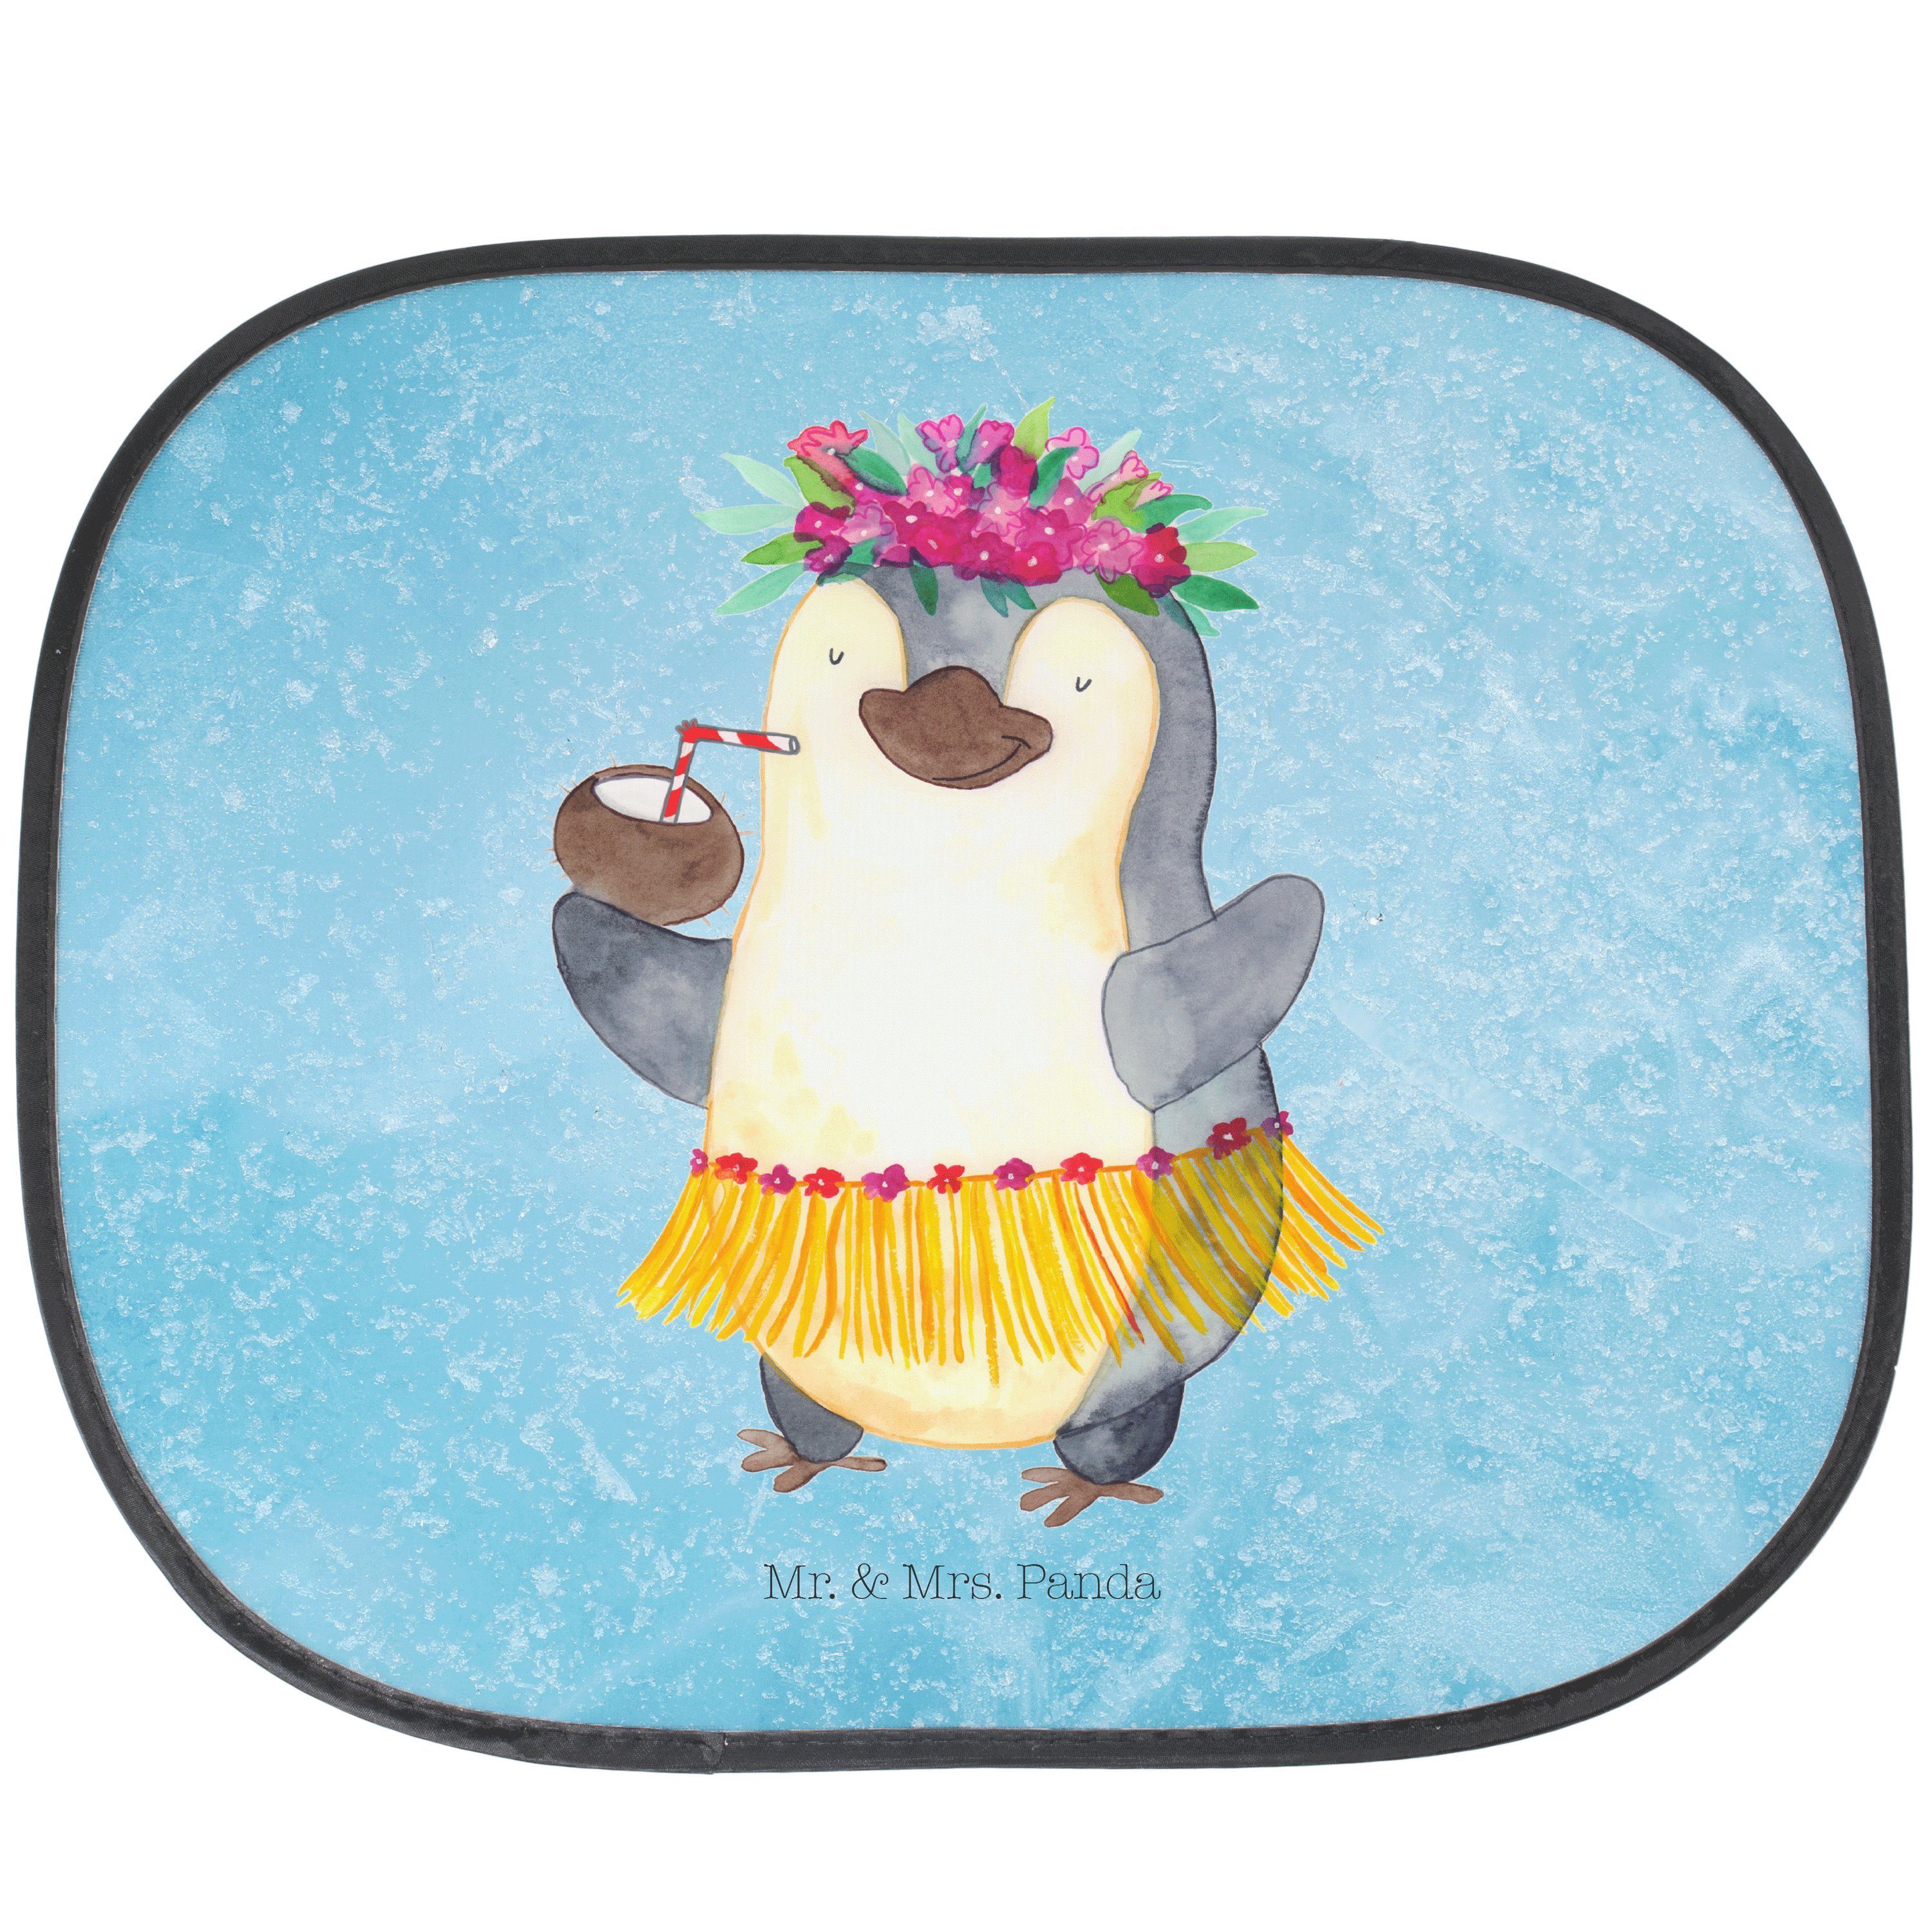 Sonnenschutz Pinguin Kokosnuss - Eisblau - Geschenk, Sonnenschutz Kinder, Pinguine, Mr. & Mrs. Panda, Seidenmatt